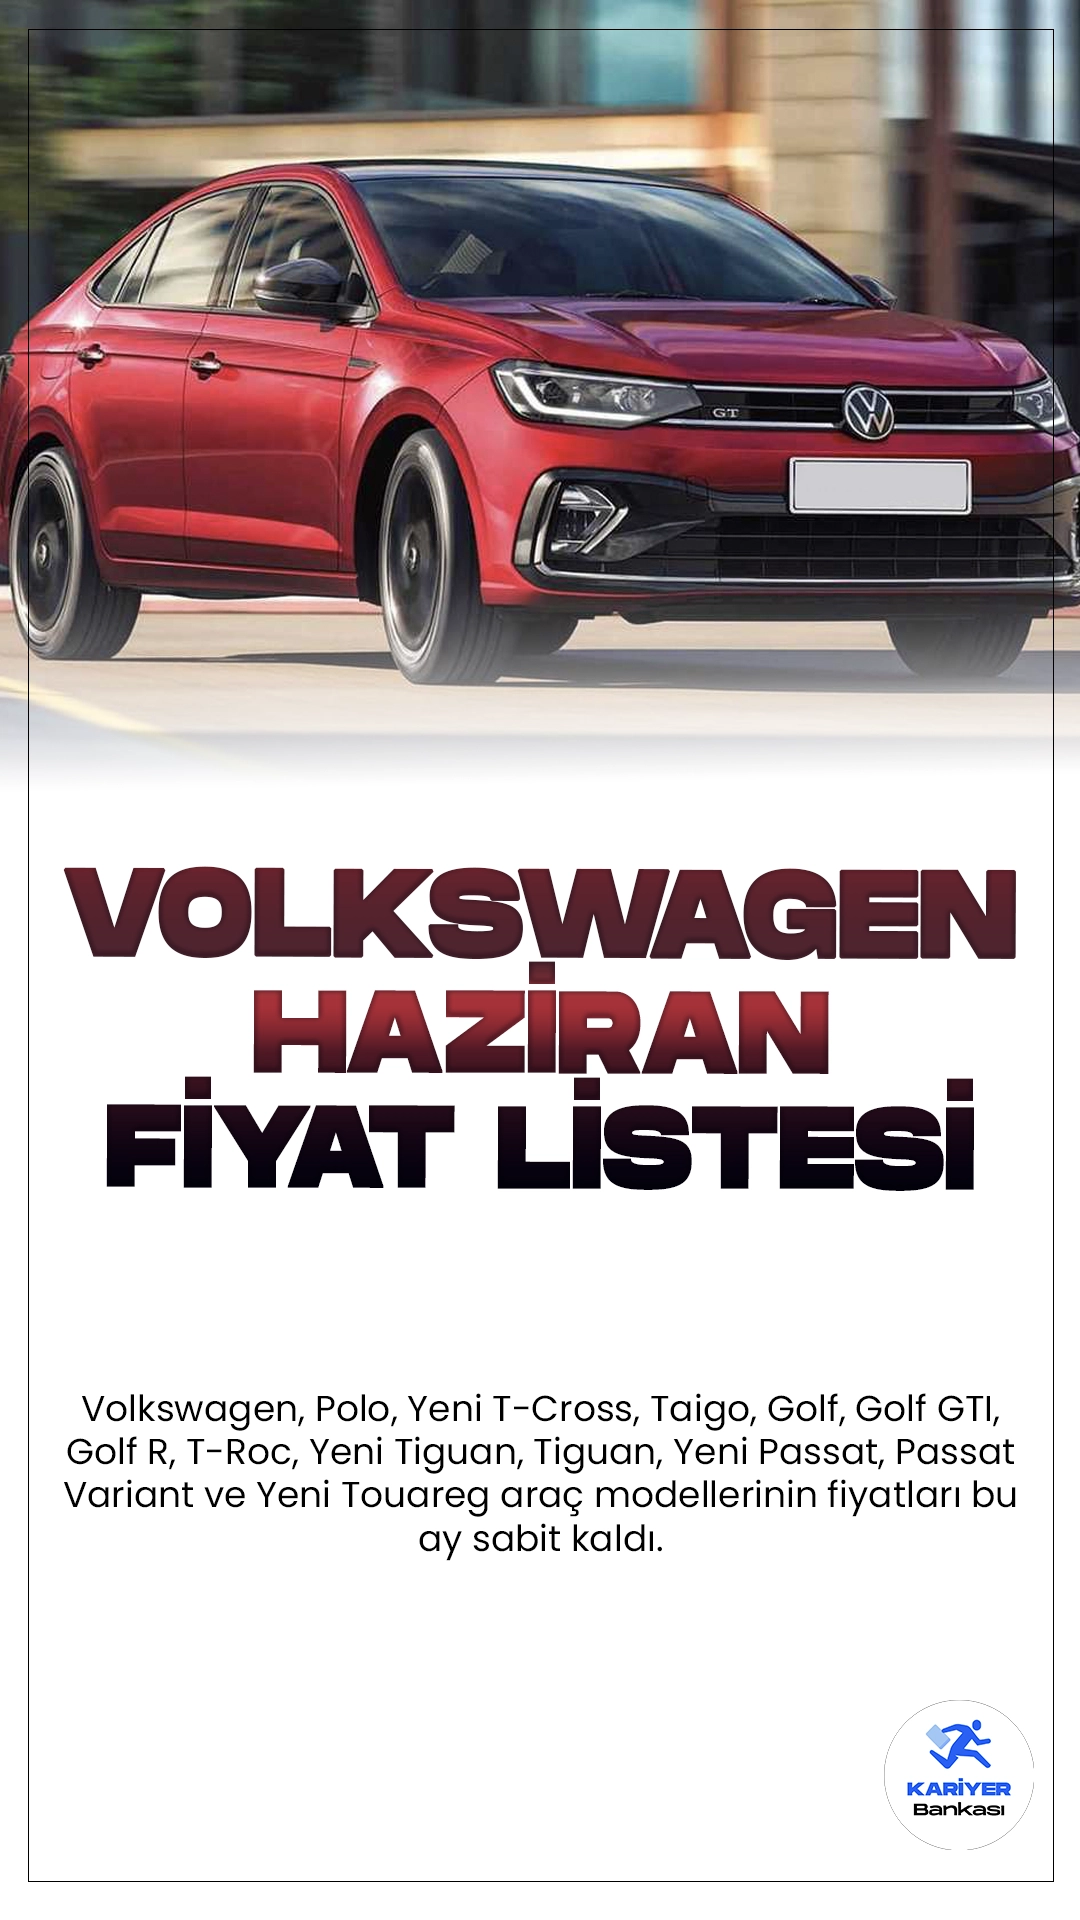 Volkswagen Haziran 2024 Fiyat Listesi Yayımlandı.Volkswagen, 2024 yılında dikkat çekici araç modelleri ile otomobil severlerin karşısına çıkıyor. Geniş ürün yelpazesi ile her ihtiyaca uygun seçenekler sunan Volkswagen, Polo, Yeni T-Cross, Taigo, Golf, Golf GTI, Golf R, T-Roc, Yeni Tiguan, Tiguan, Yeni Passat, Passat Variant ve Yeni Touareg modelleriyle göz dolduruyor. İşte 2024 yılına damga vuracak Volkswagen araç modelleri ve özellikleri: